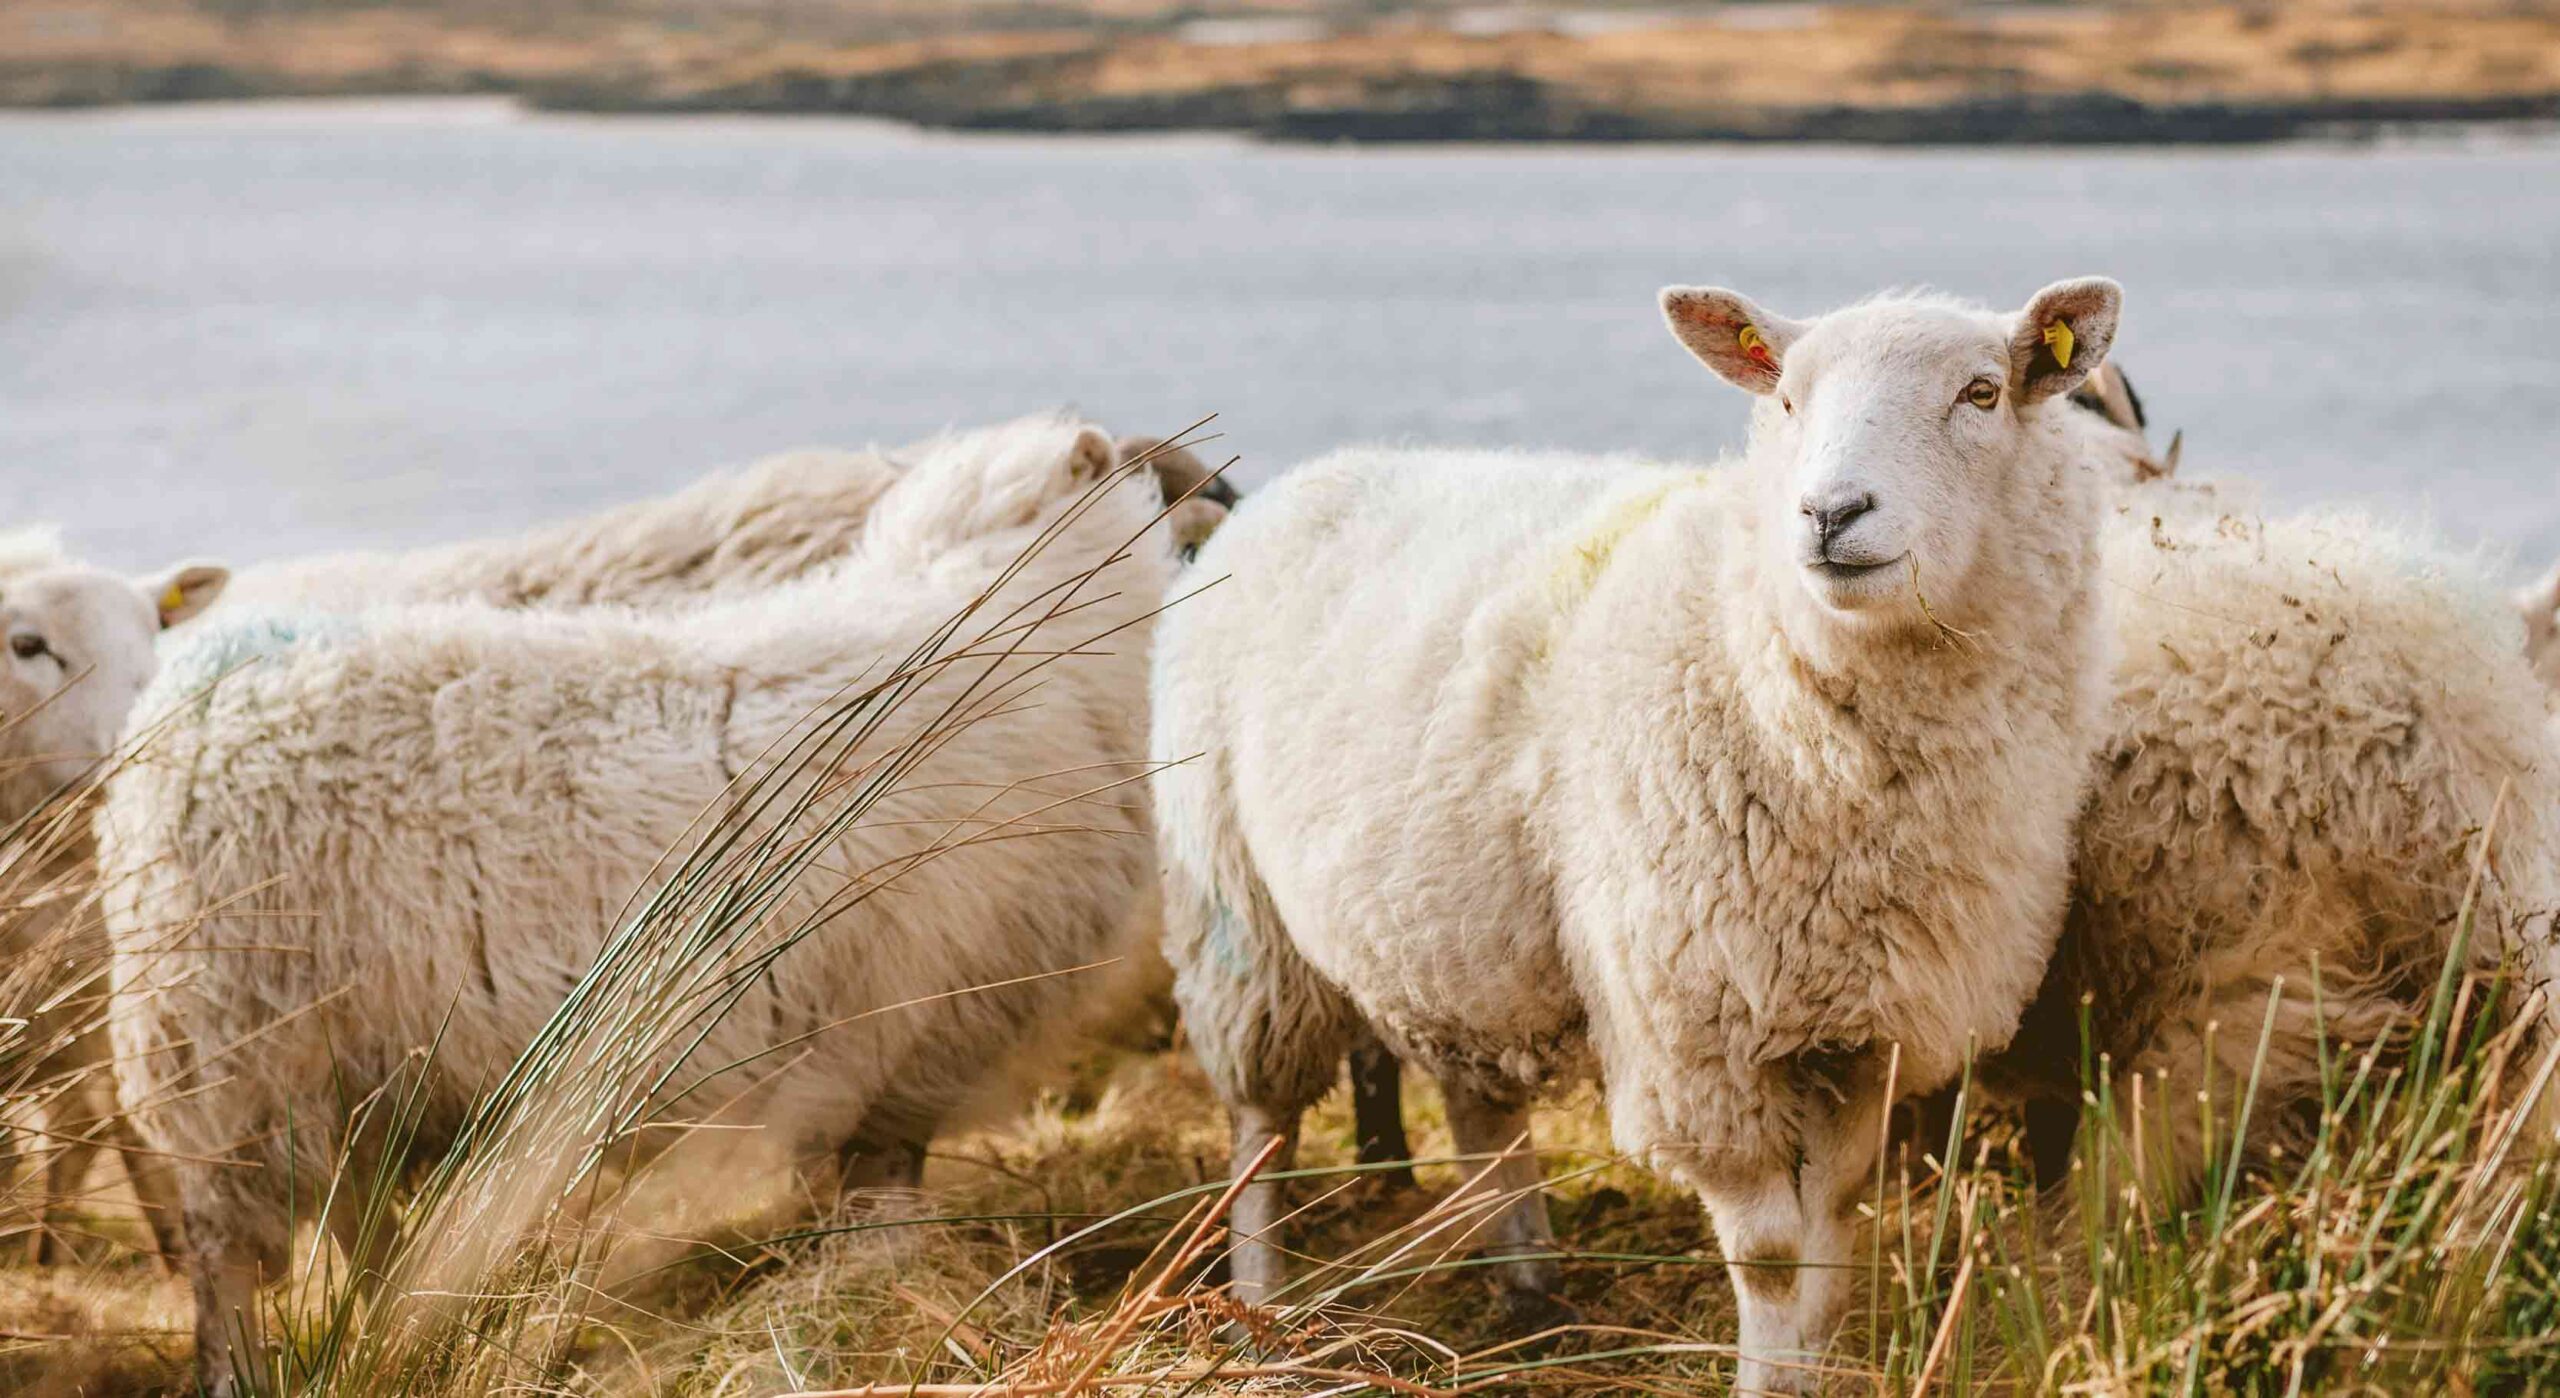 Farm sheep feeding guide